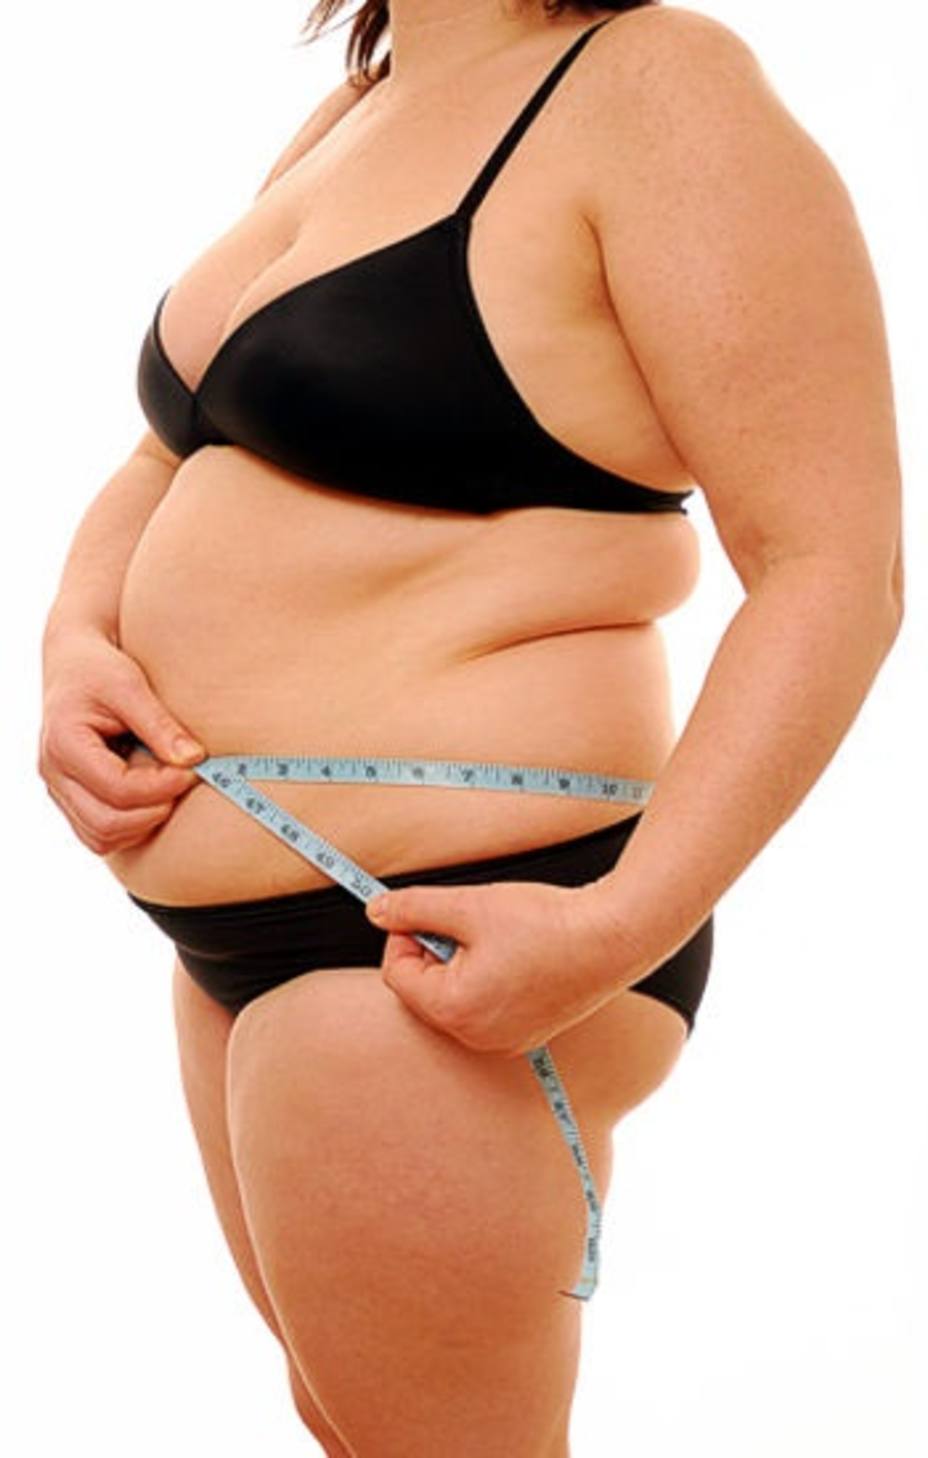 La forma en la que el cuerpo almacena la grasa influye en la aparición de patologías relacionadas con la obesidad